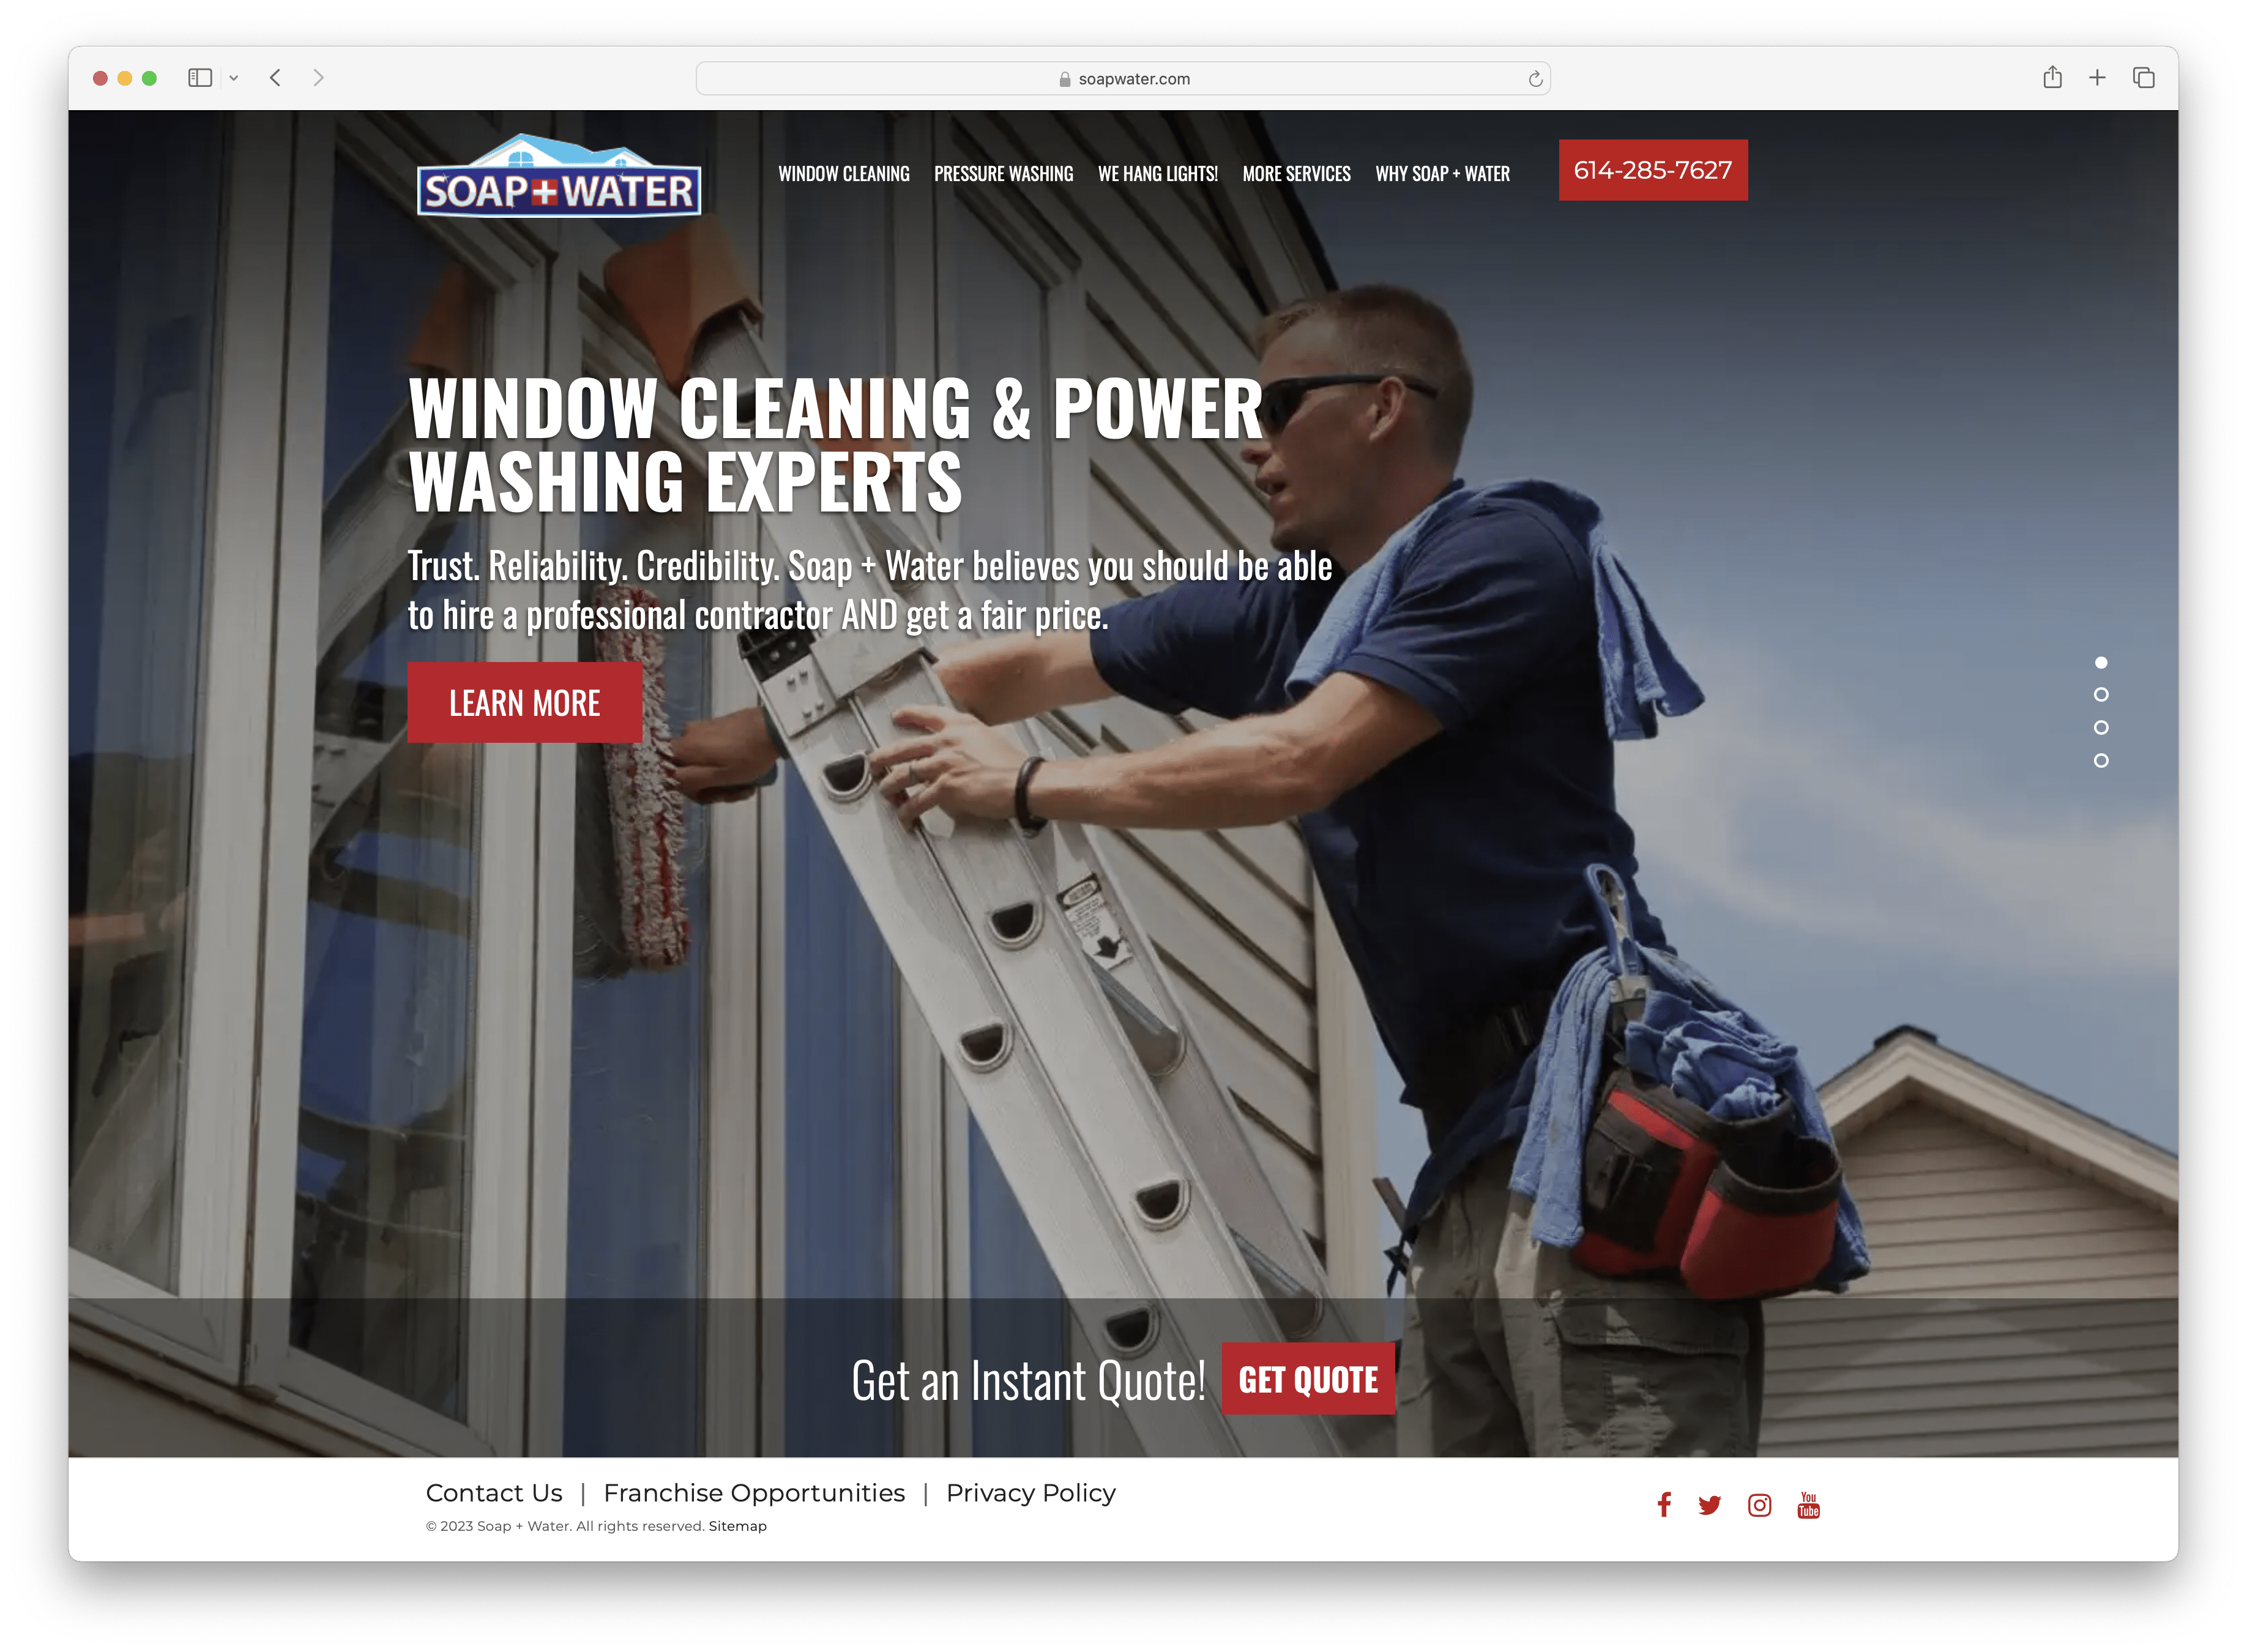 สบู่ + น้ำ - เว็บไซต์ทำความสะอาดหน้าต่างและซักล้างด้วยไฟฟ้า